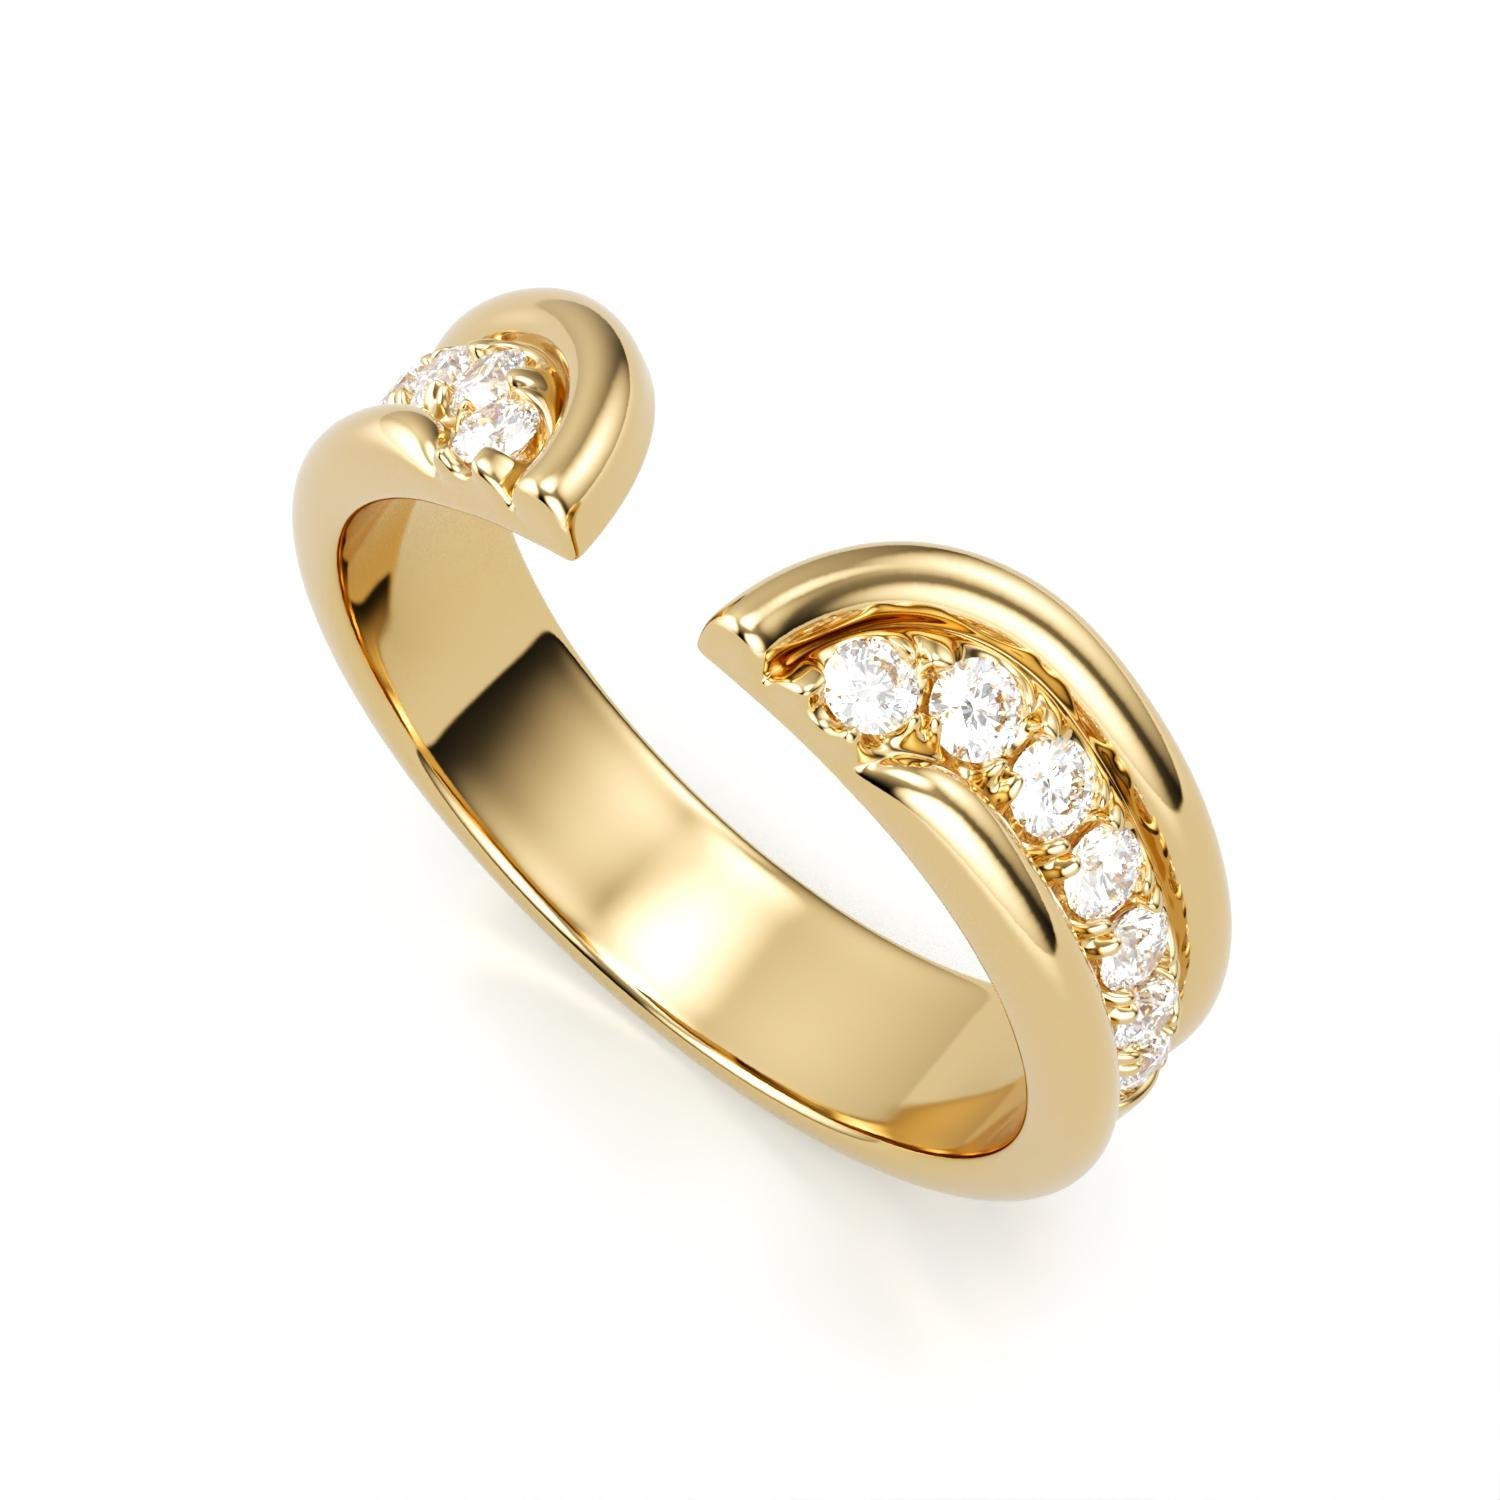 Dieser moderne und dennoch minimalistische Ring strahlt unaufdringliche Coolness und Eleganz aus. Das sorgfältig gefertigte Band umgibt eine Reihe von weißen, gepflasterten Diamanten, die sich nahtlos um den Finger schlängeln und ihn anmutig